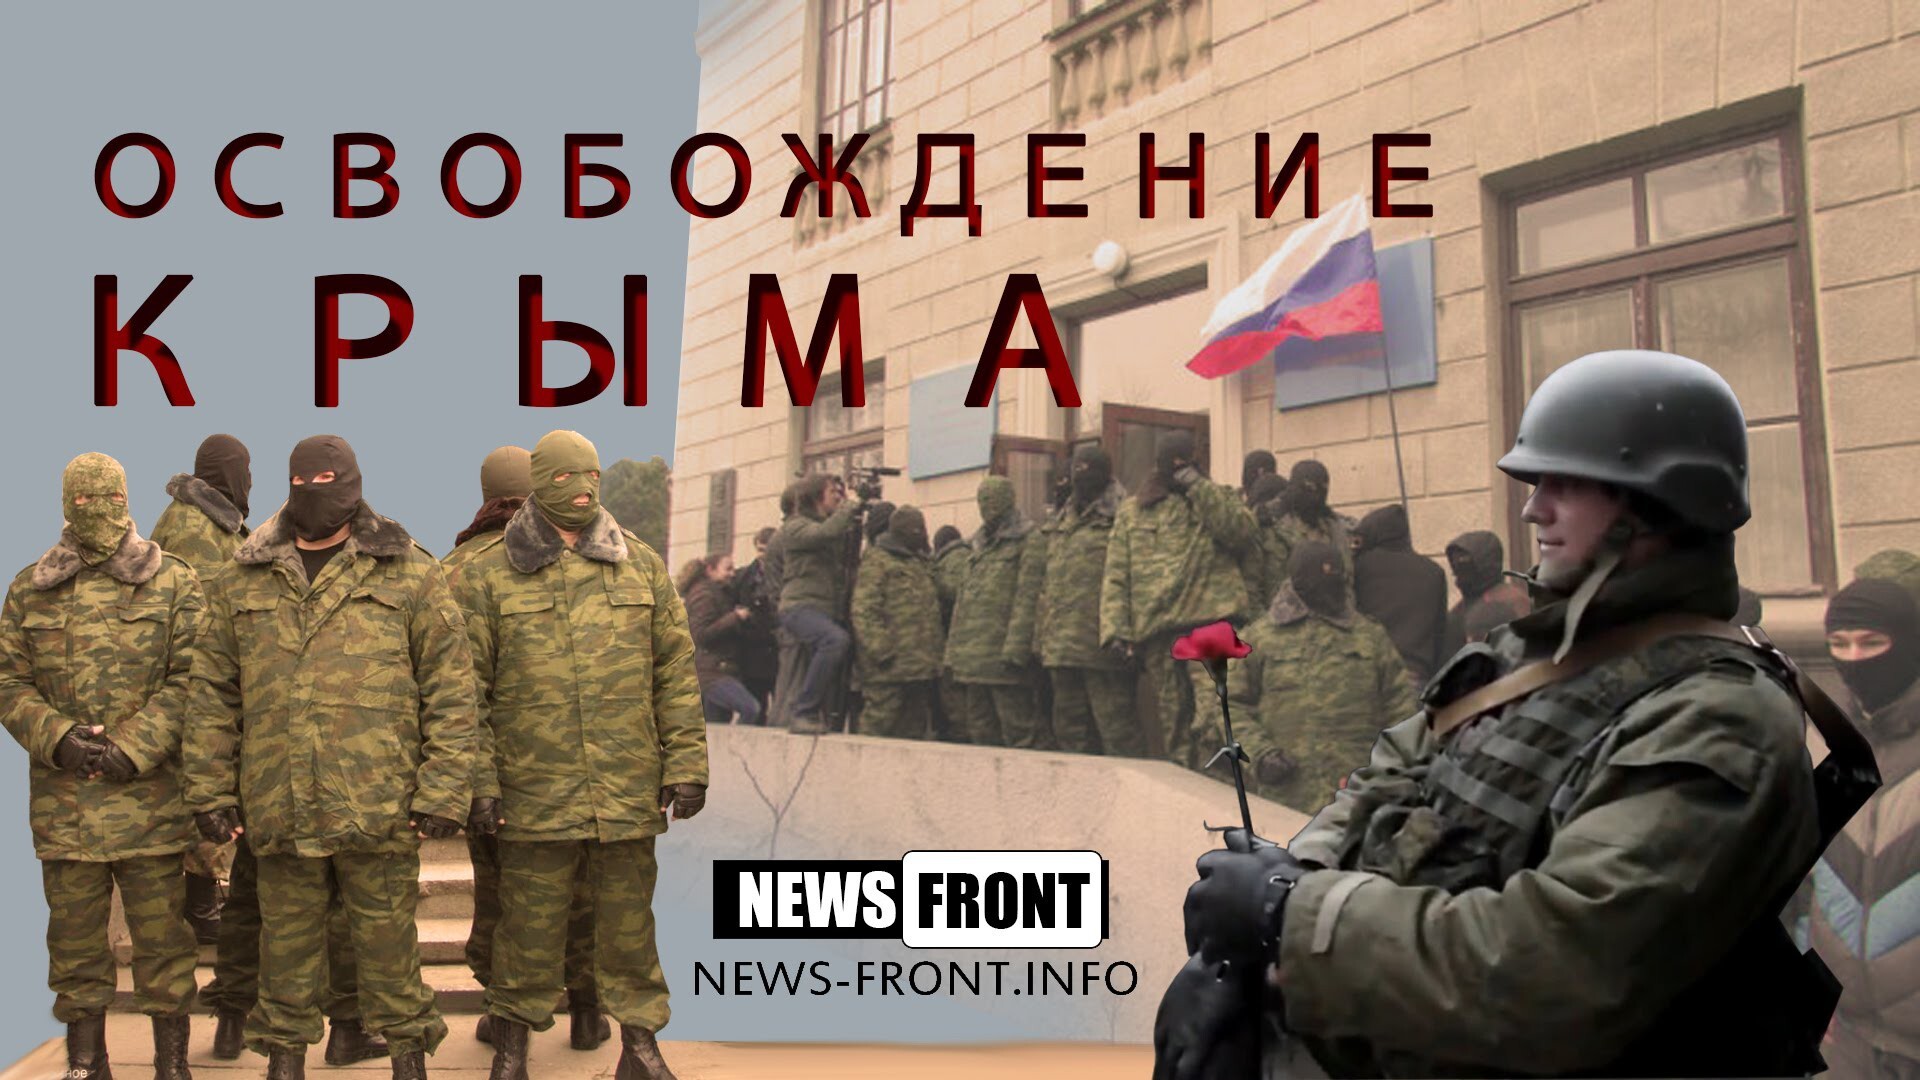 Документальный фильм NewsFront: «Освобождение Крыма»